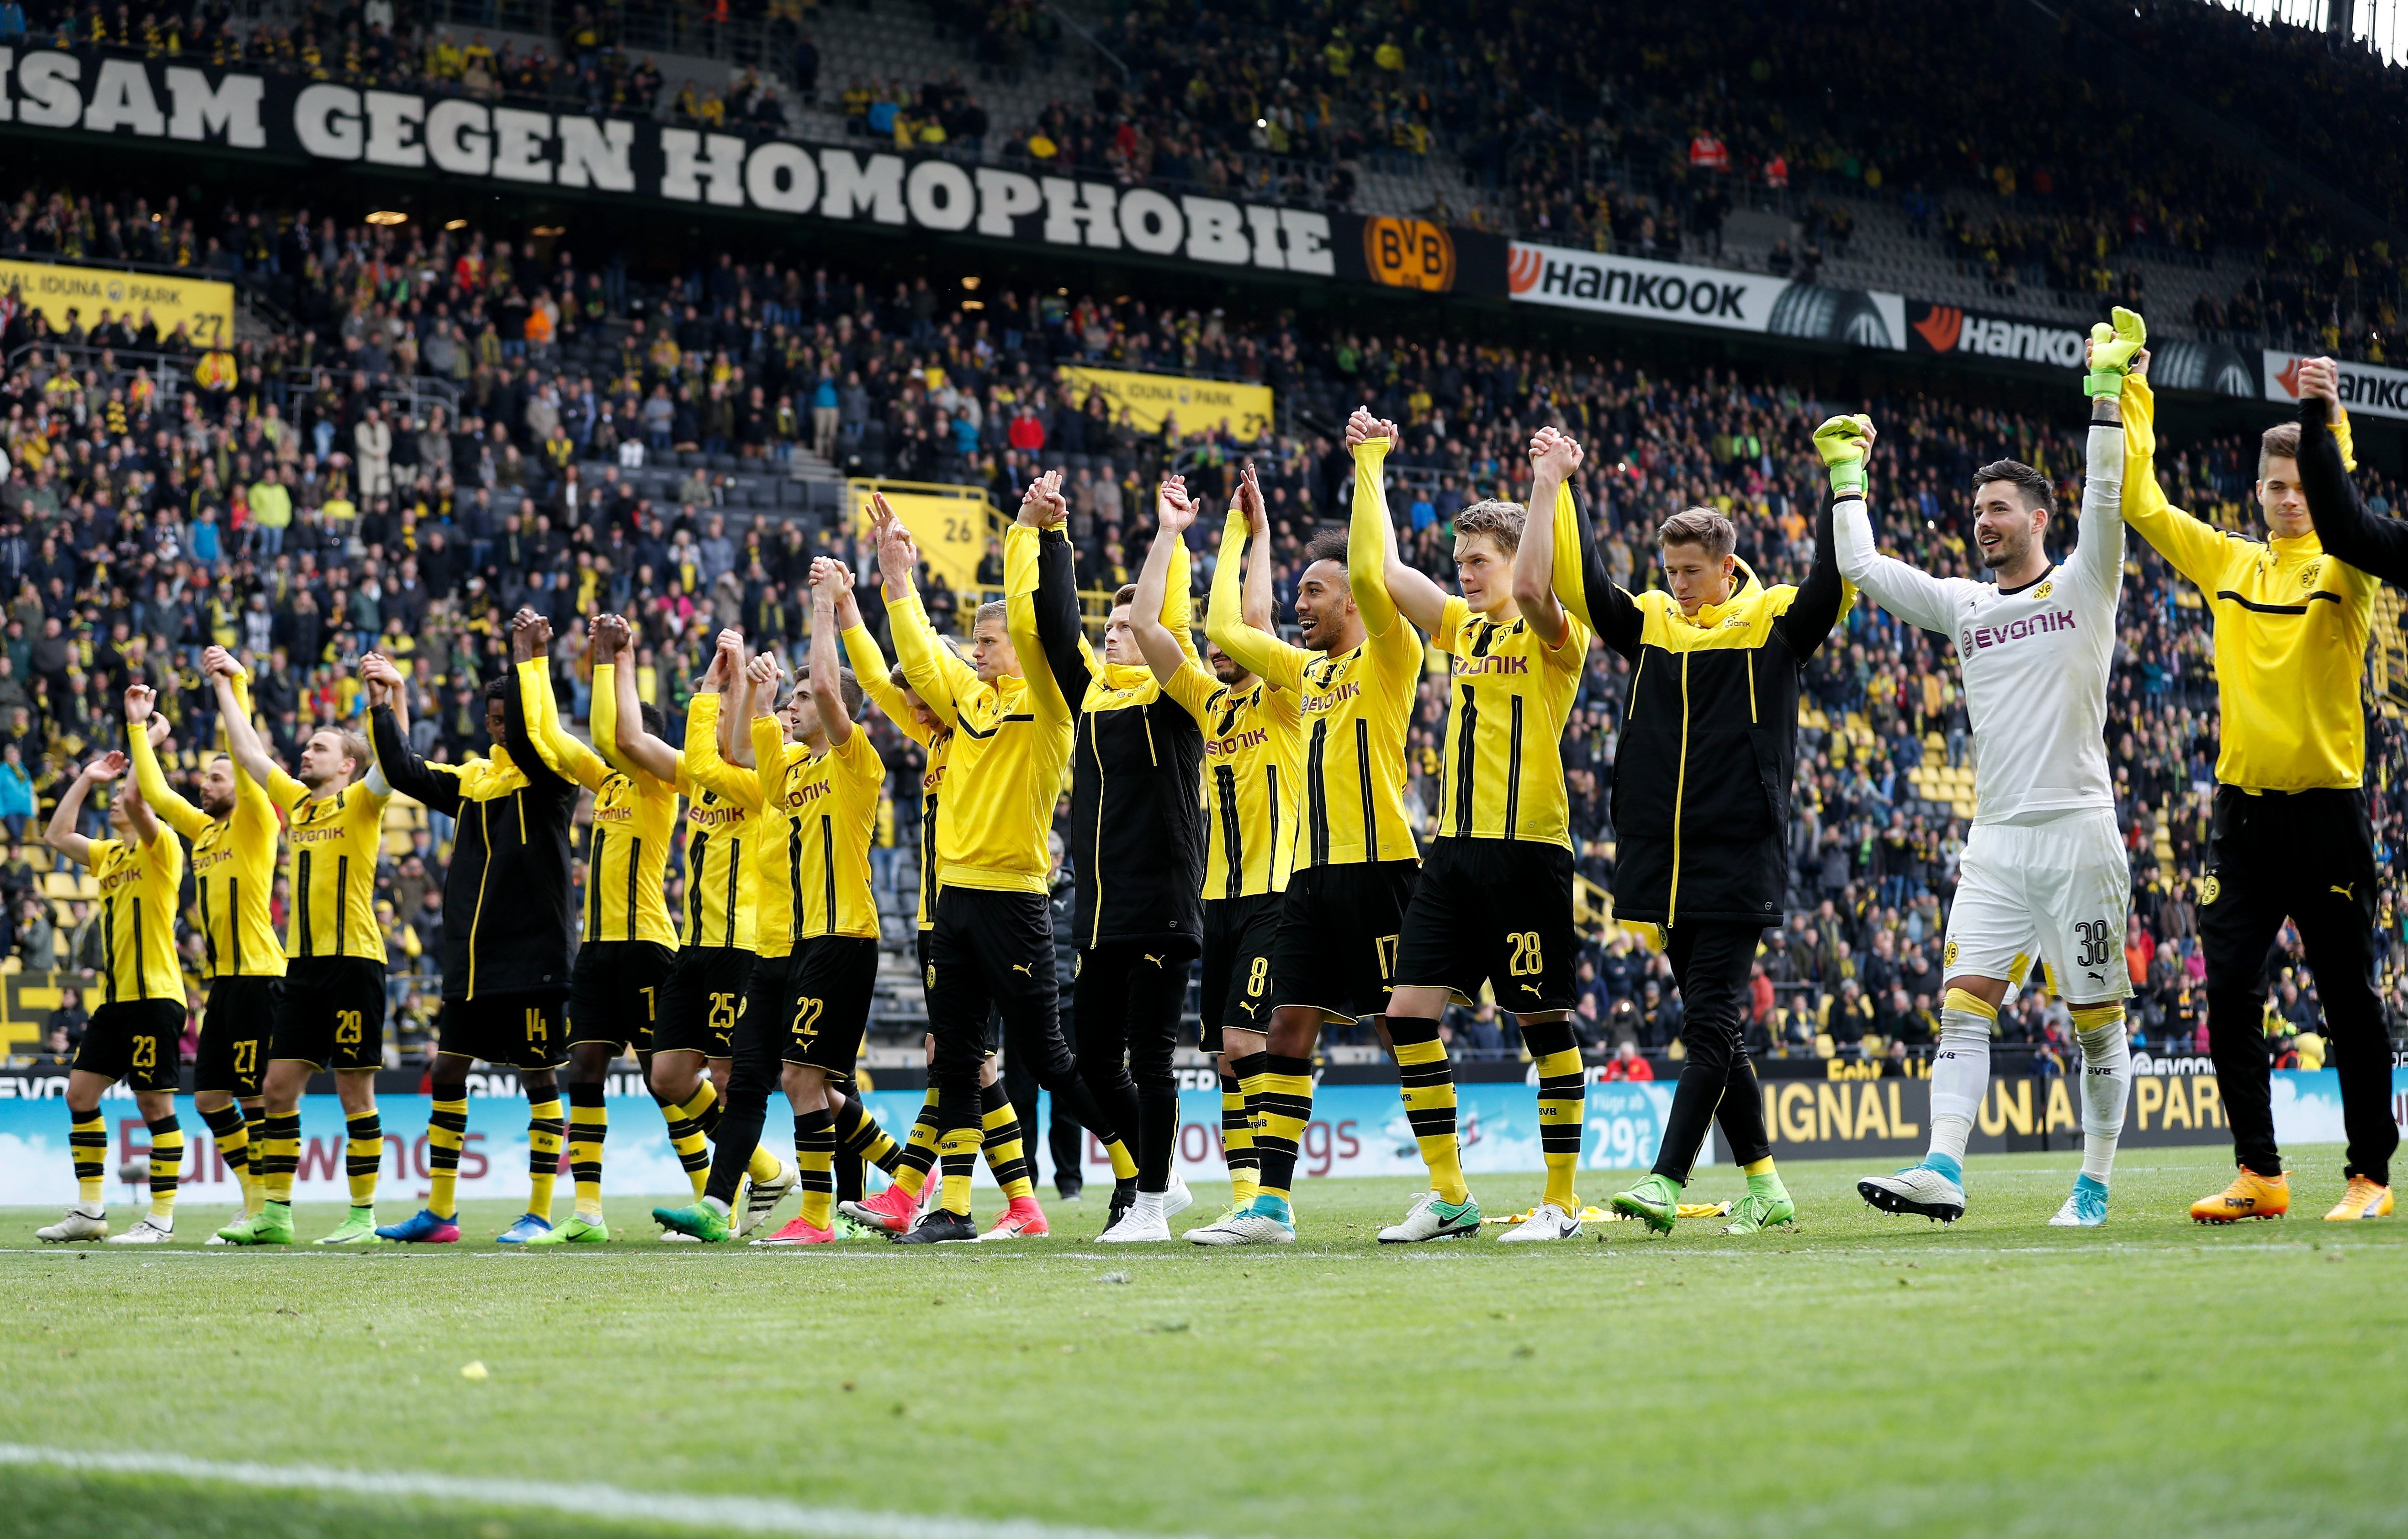 Bartra, agraït al Dortmund per les nombroses mostres de suport